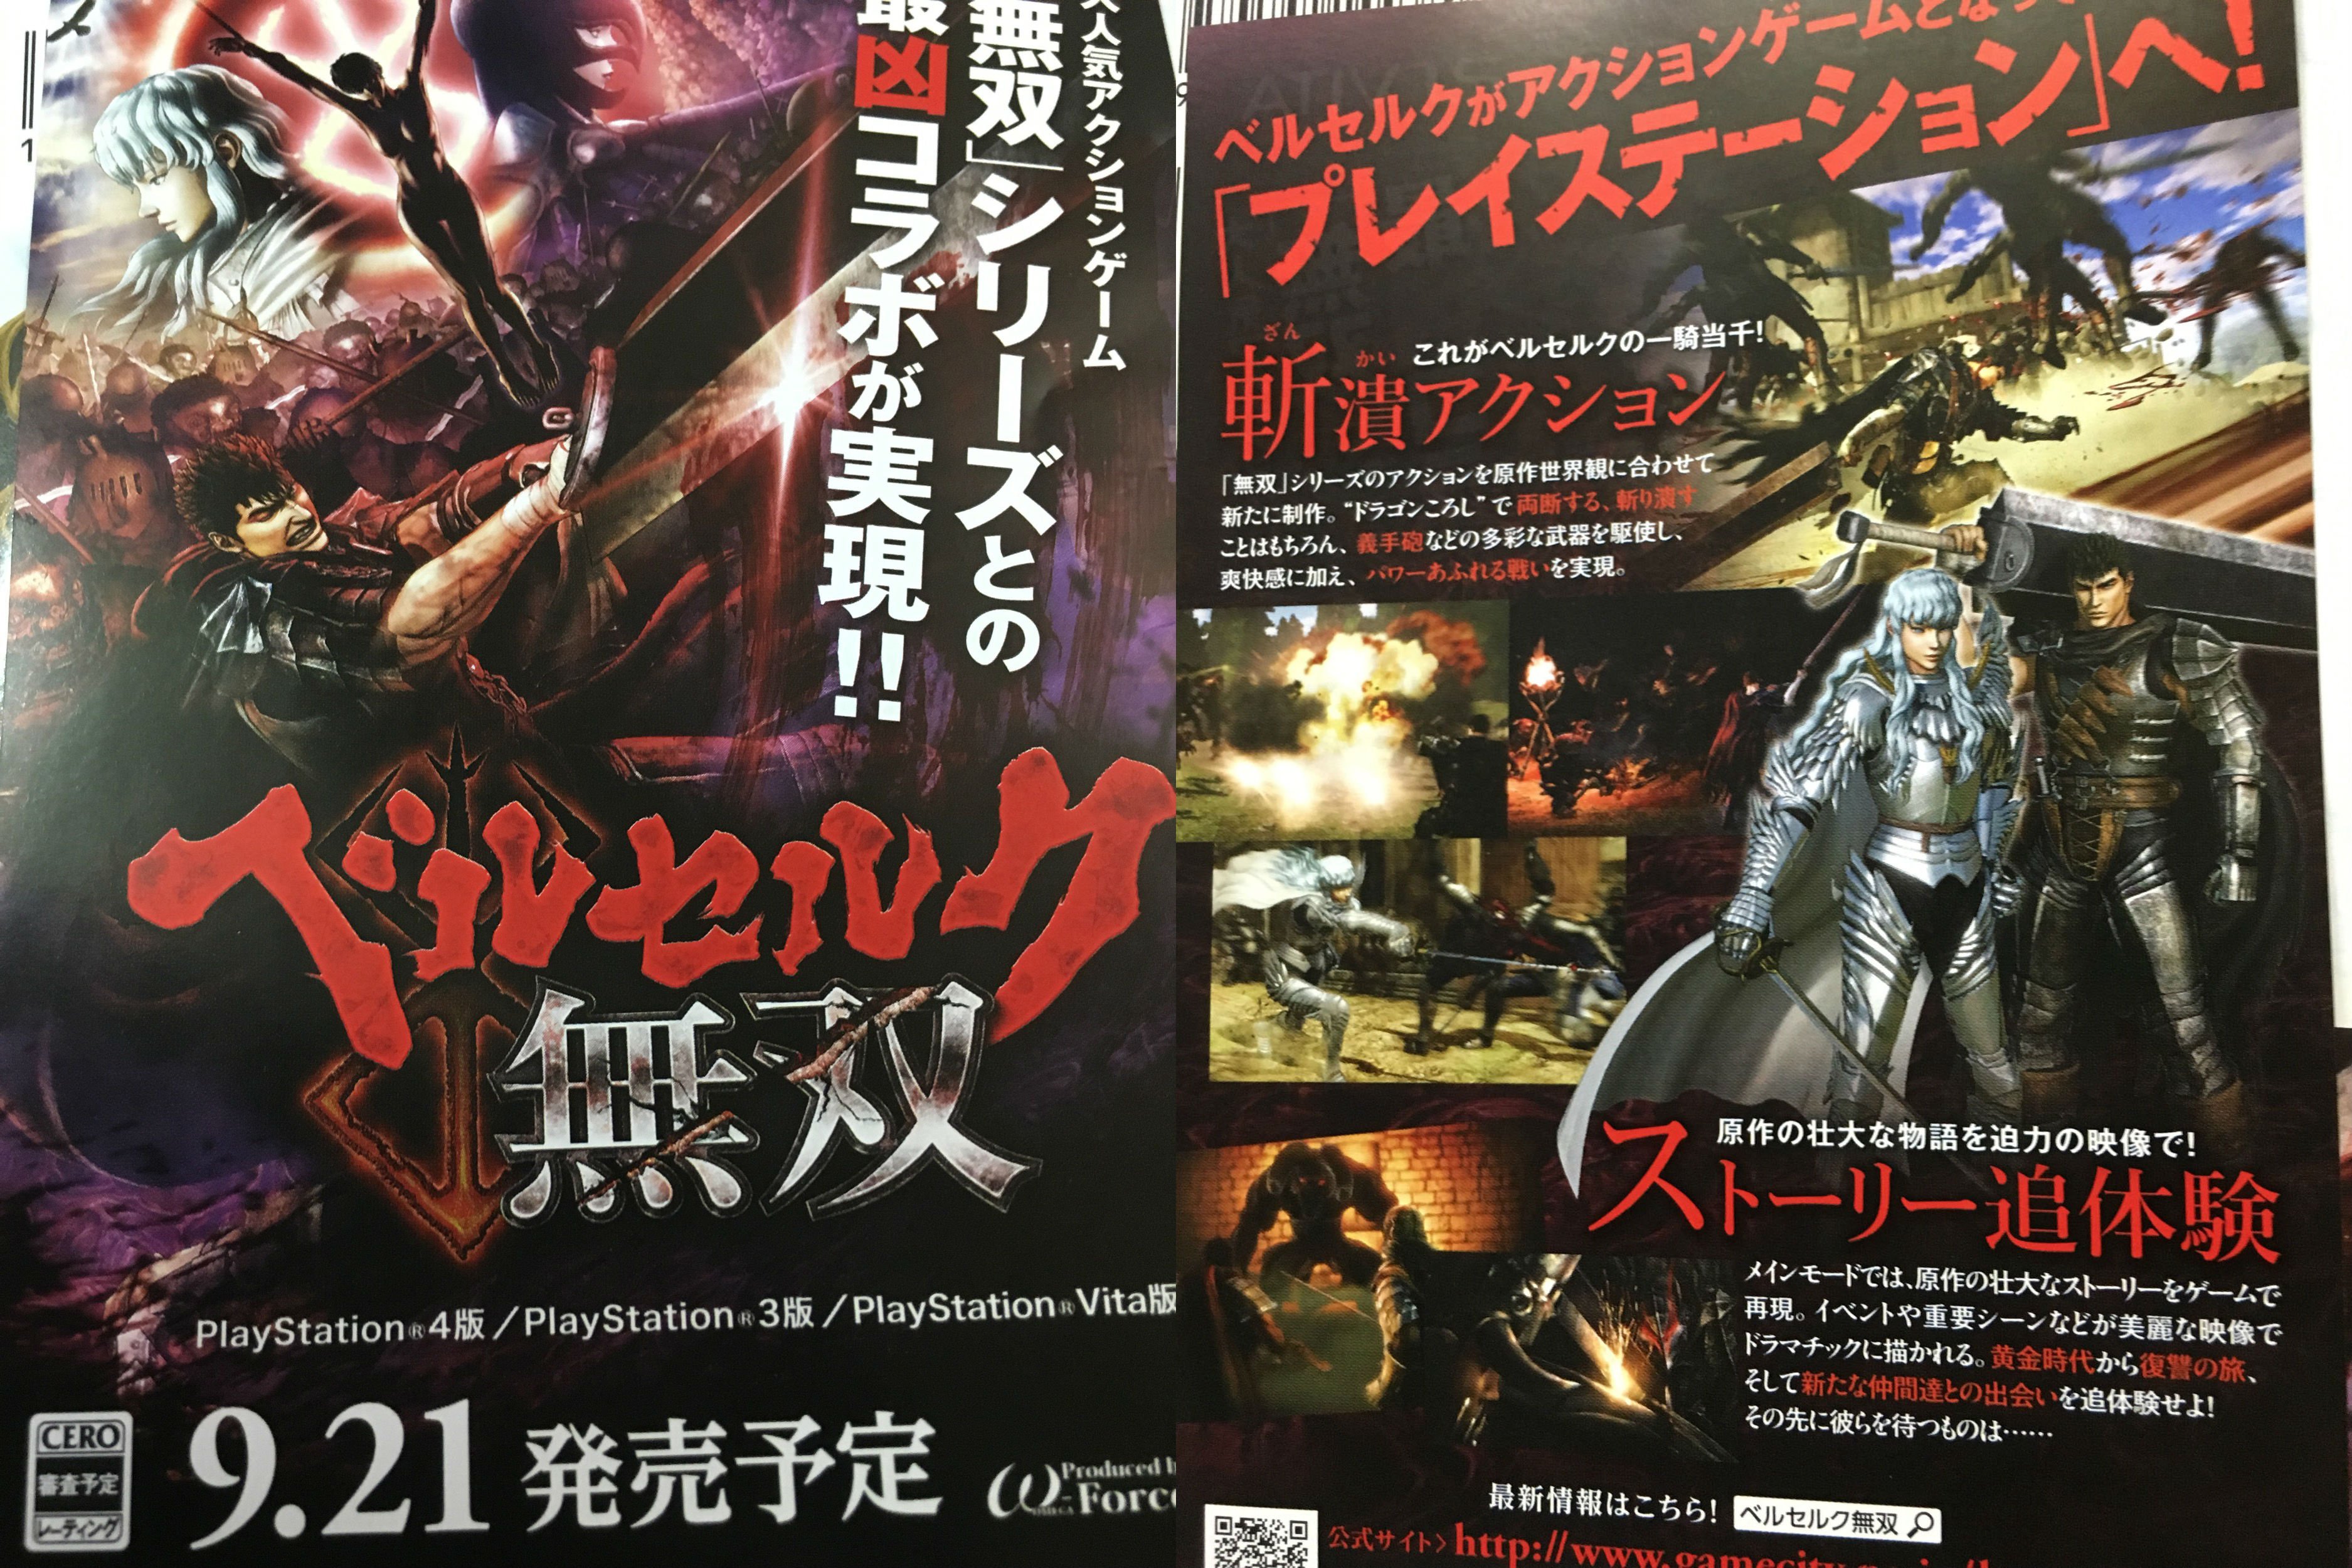 “Berserk Warriors” Japanese Release Date Revealed - Western Release Still A Mystery